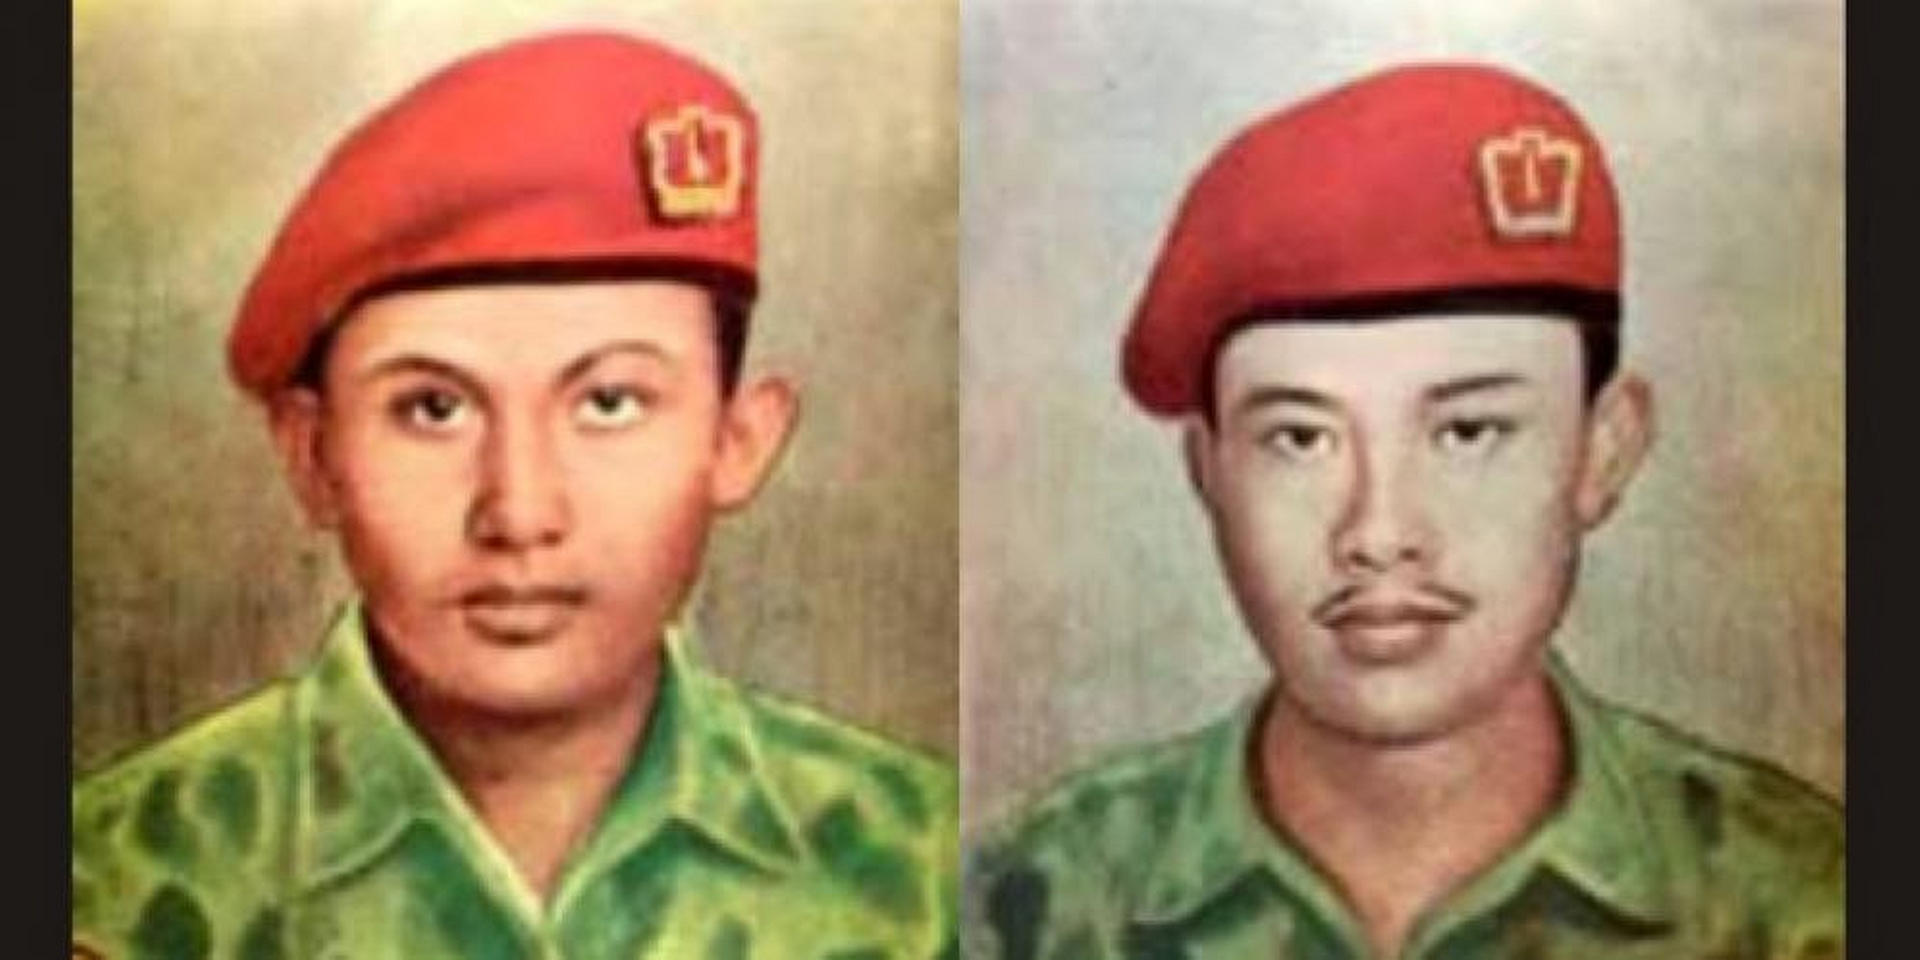 Indonesian marines Usman Haji Mohamed Ali and Harun Said